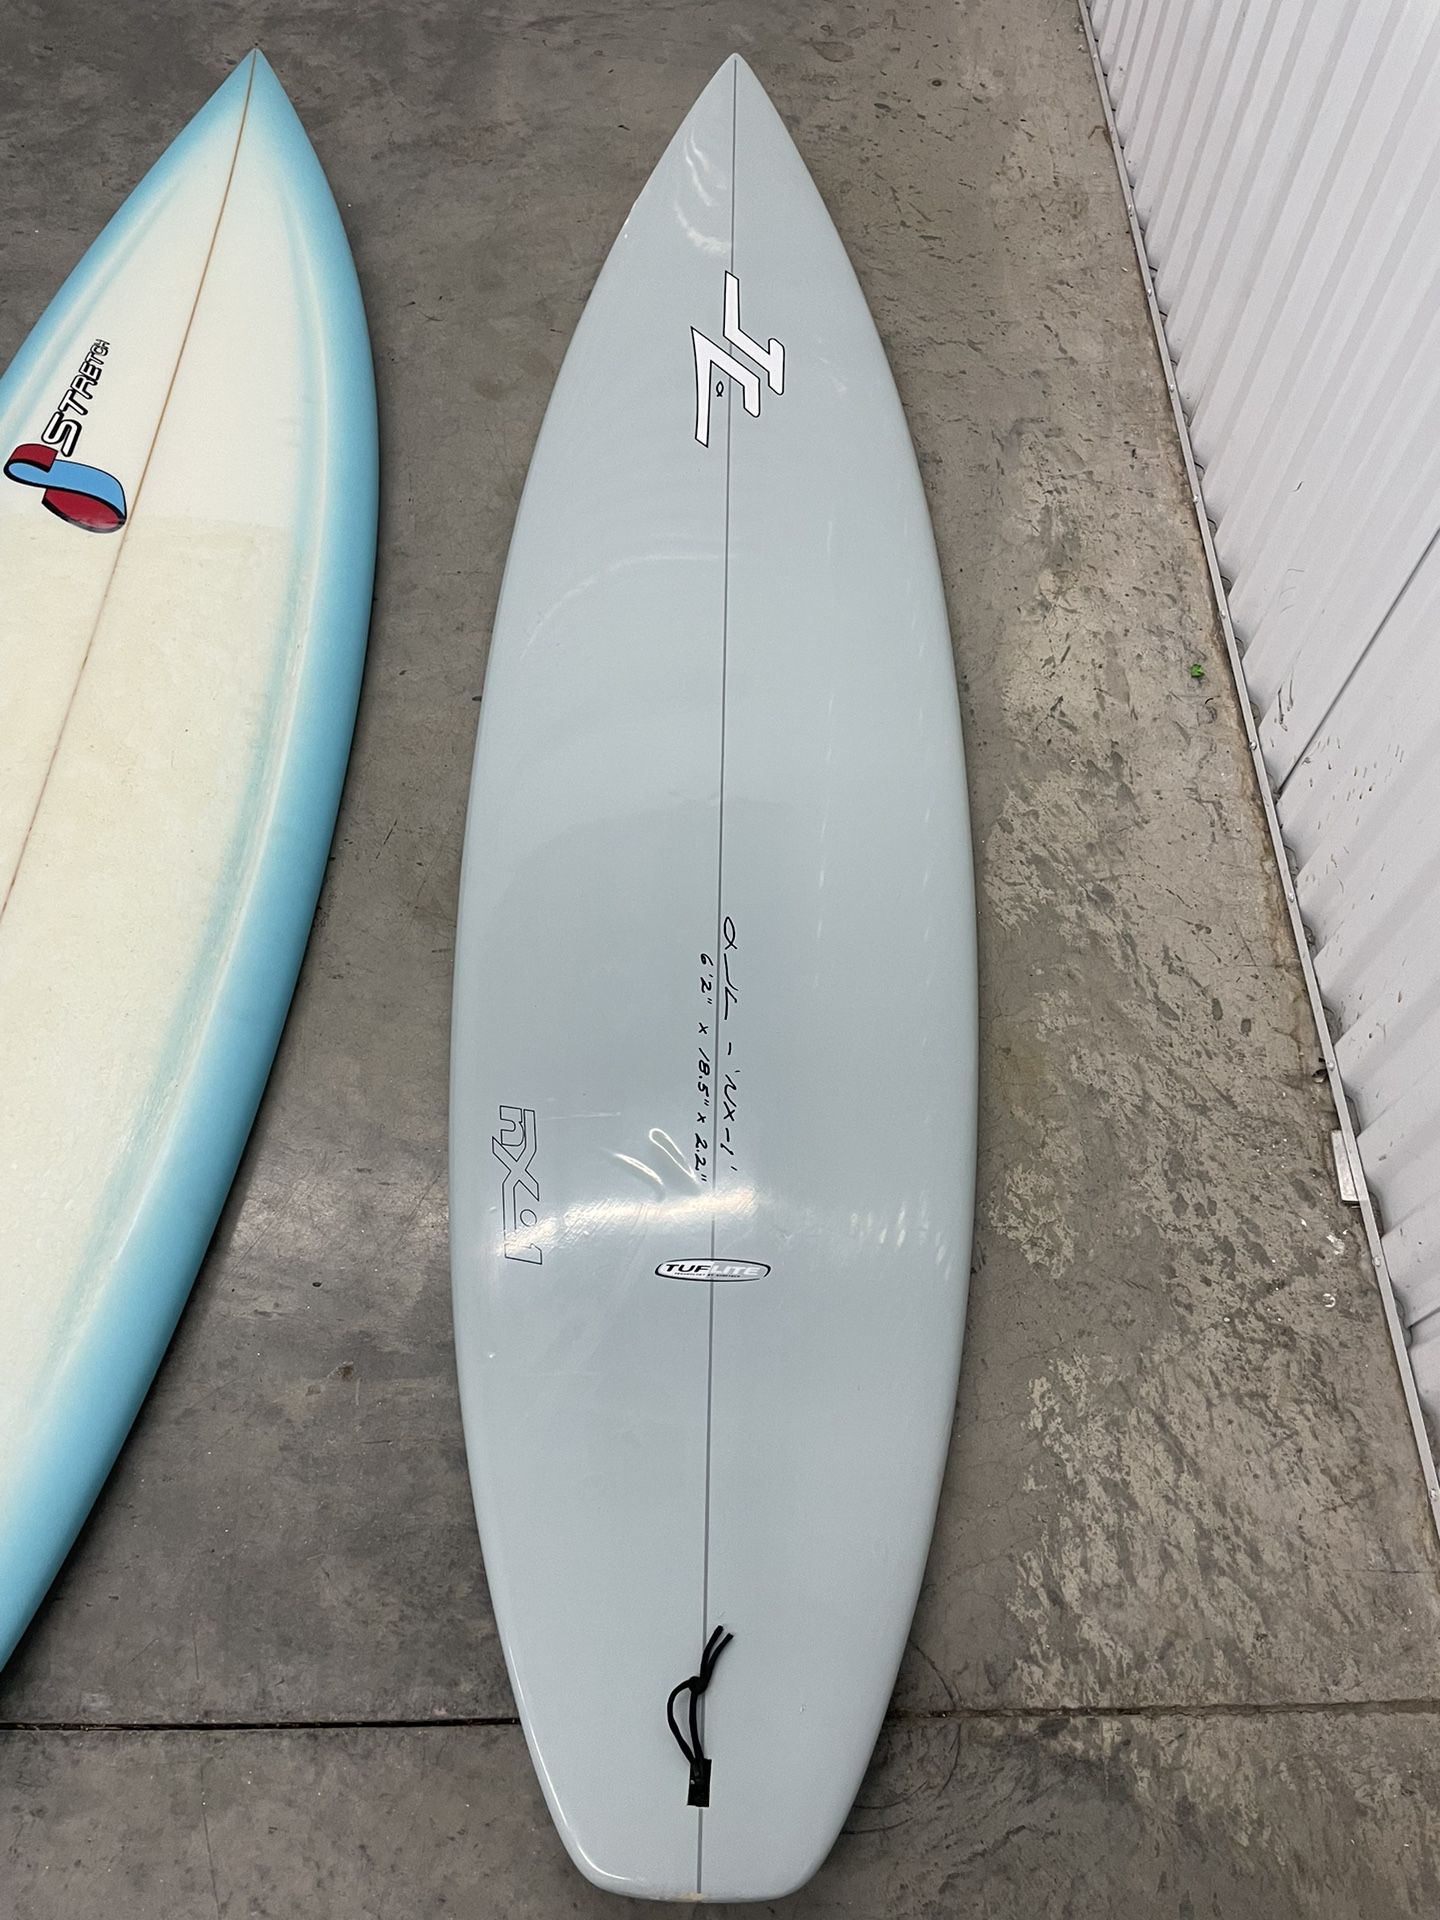 JC Hawaii 6’2” Surfboard/Shortboard for Sale in Revere, MA - OfferUp